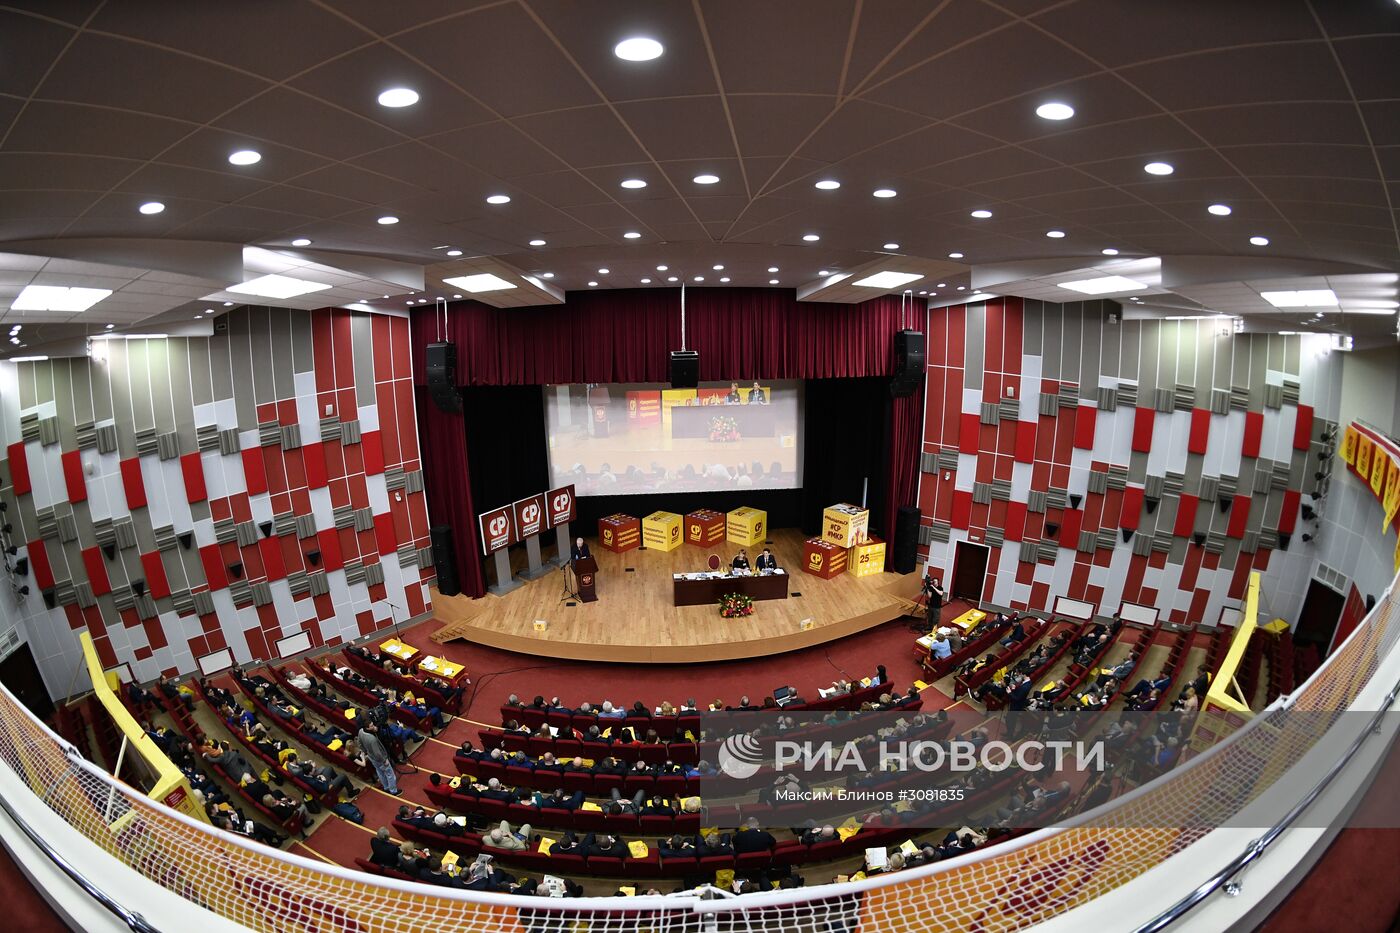 Заседание Центрального совета партии "Справедливая Россия"